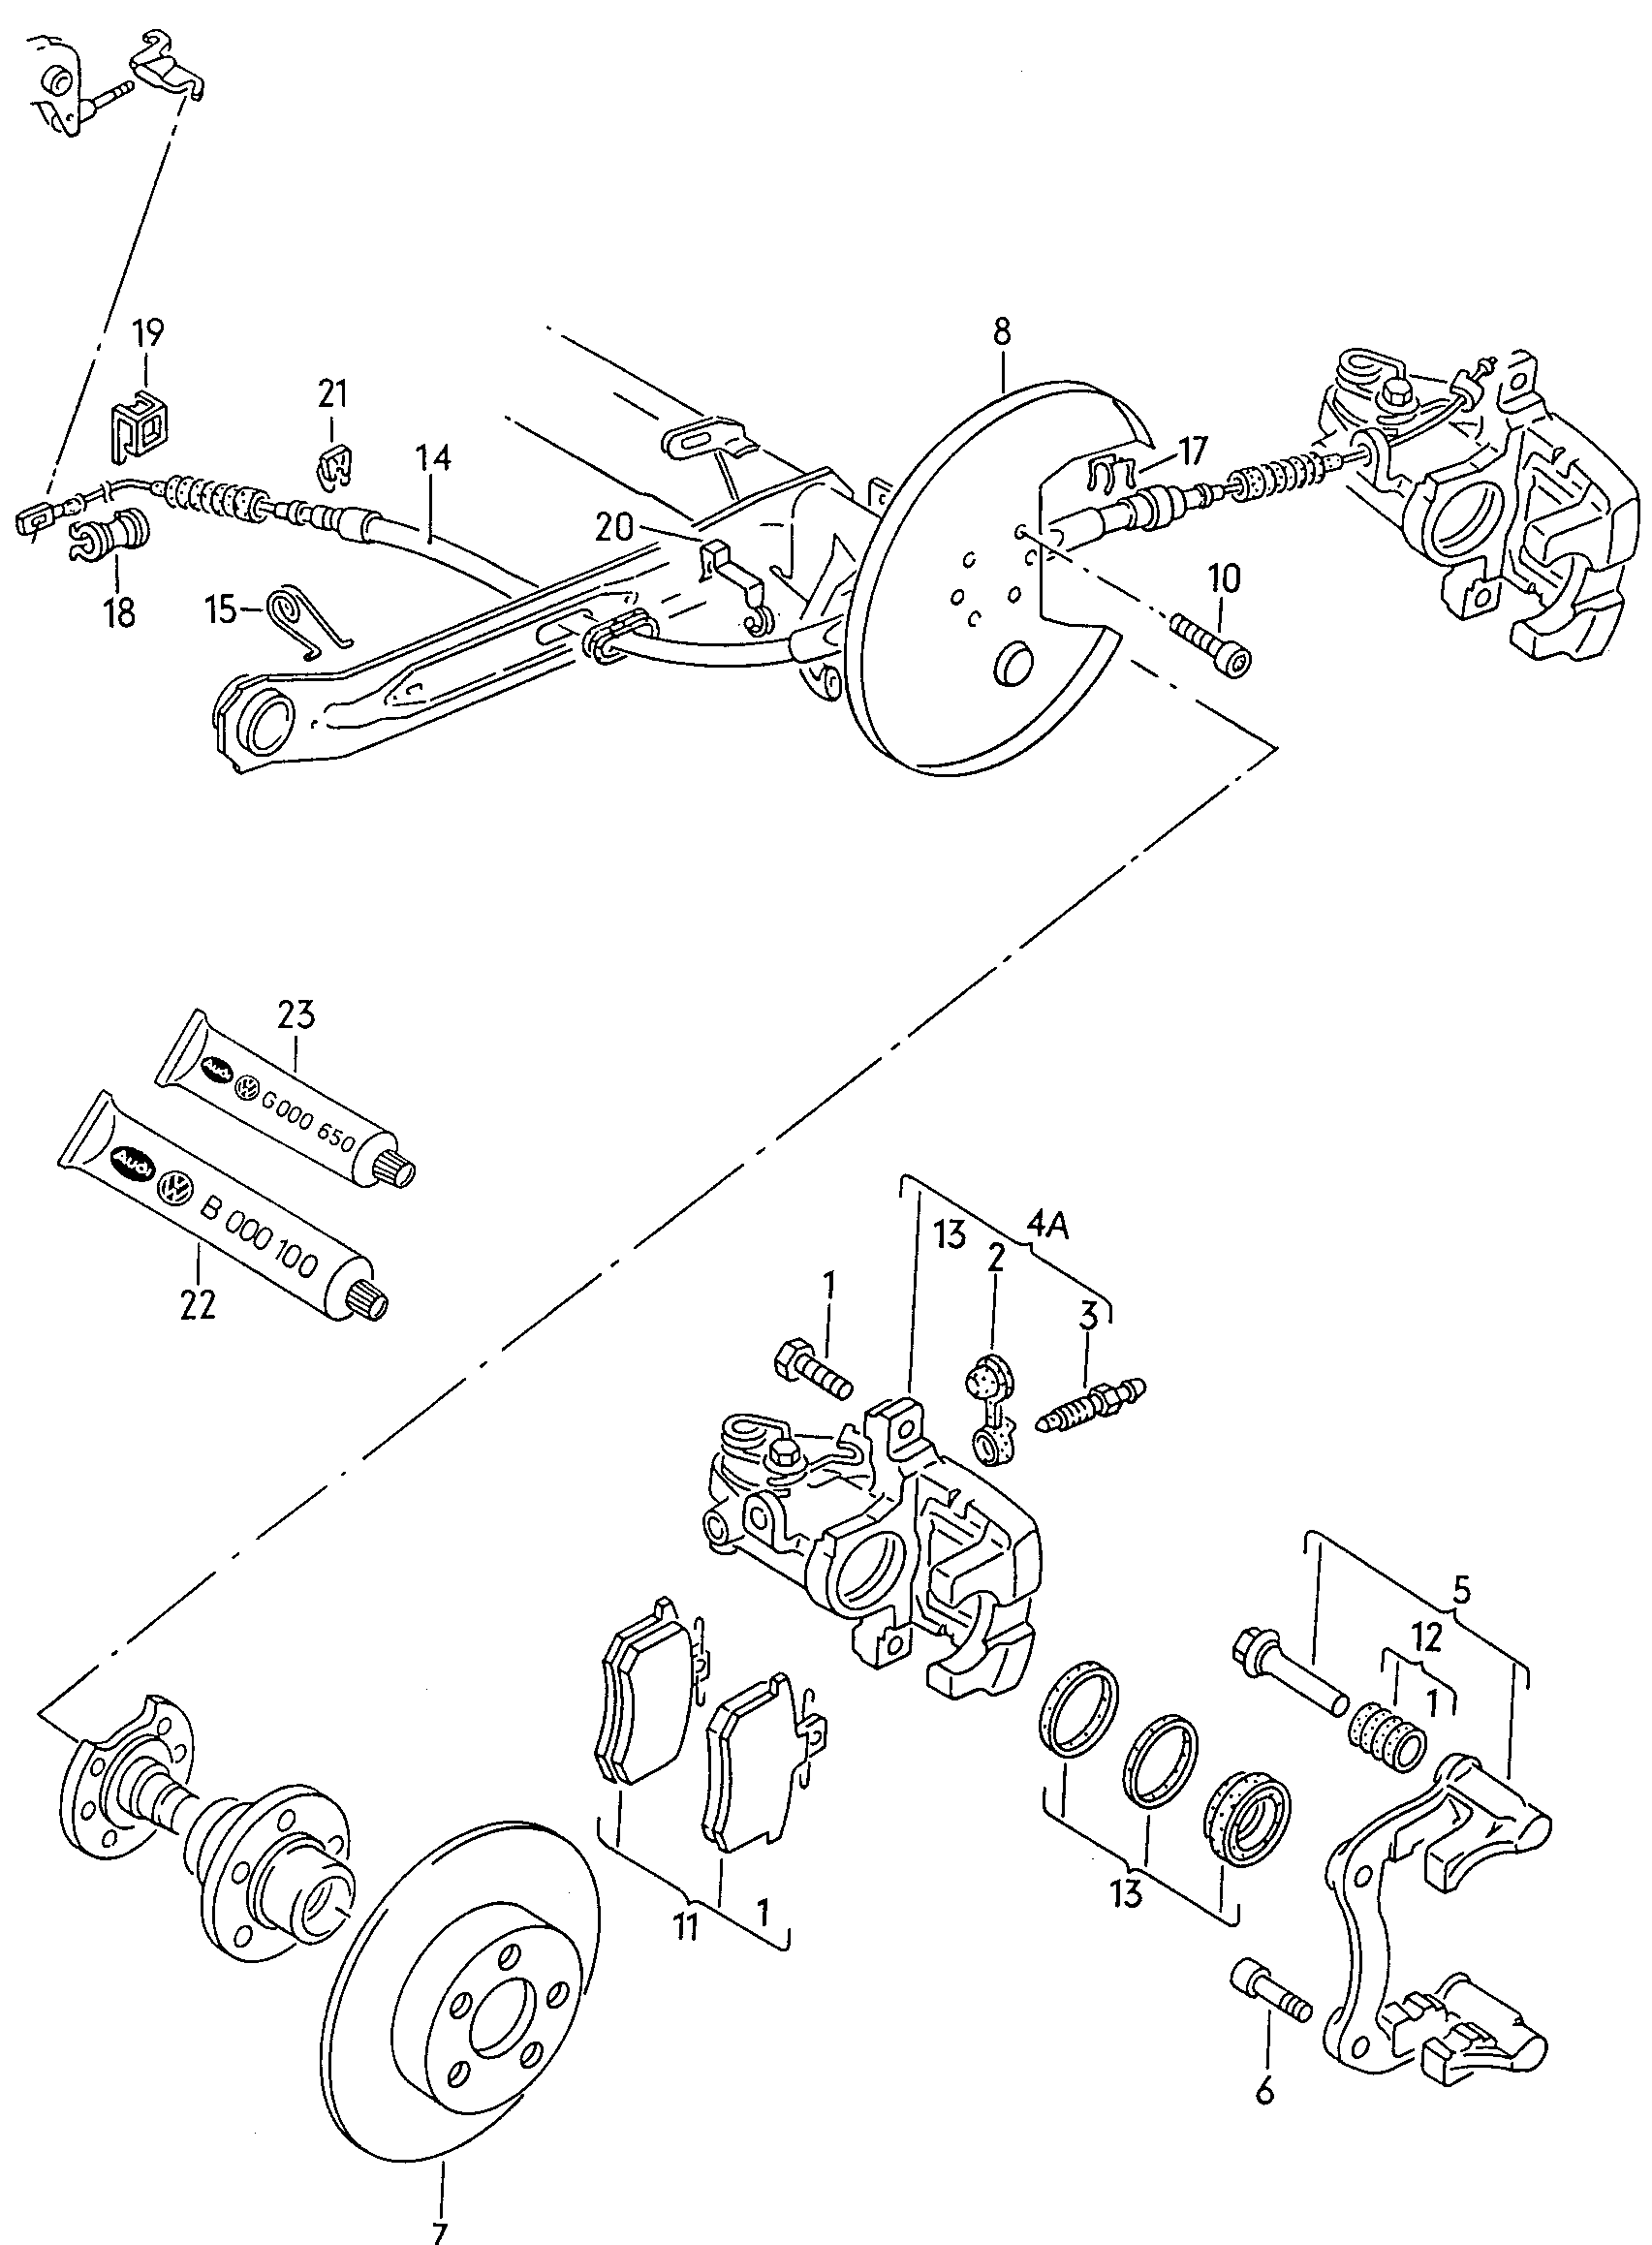 拳式鞍座制动器; 制动钳壳体; 带导向螺栓的
制动器支架; 制动盘 - Audi 100/Avant(A100)  